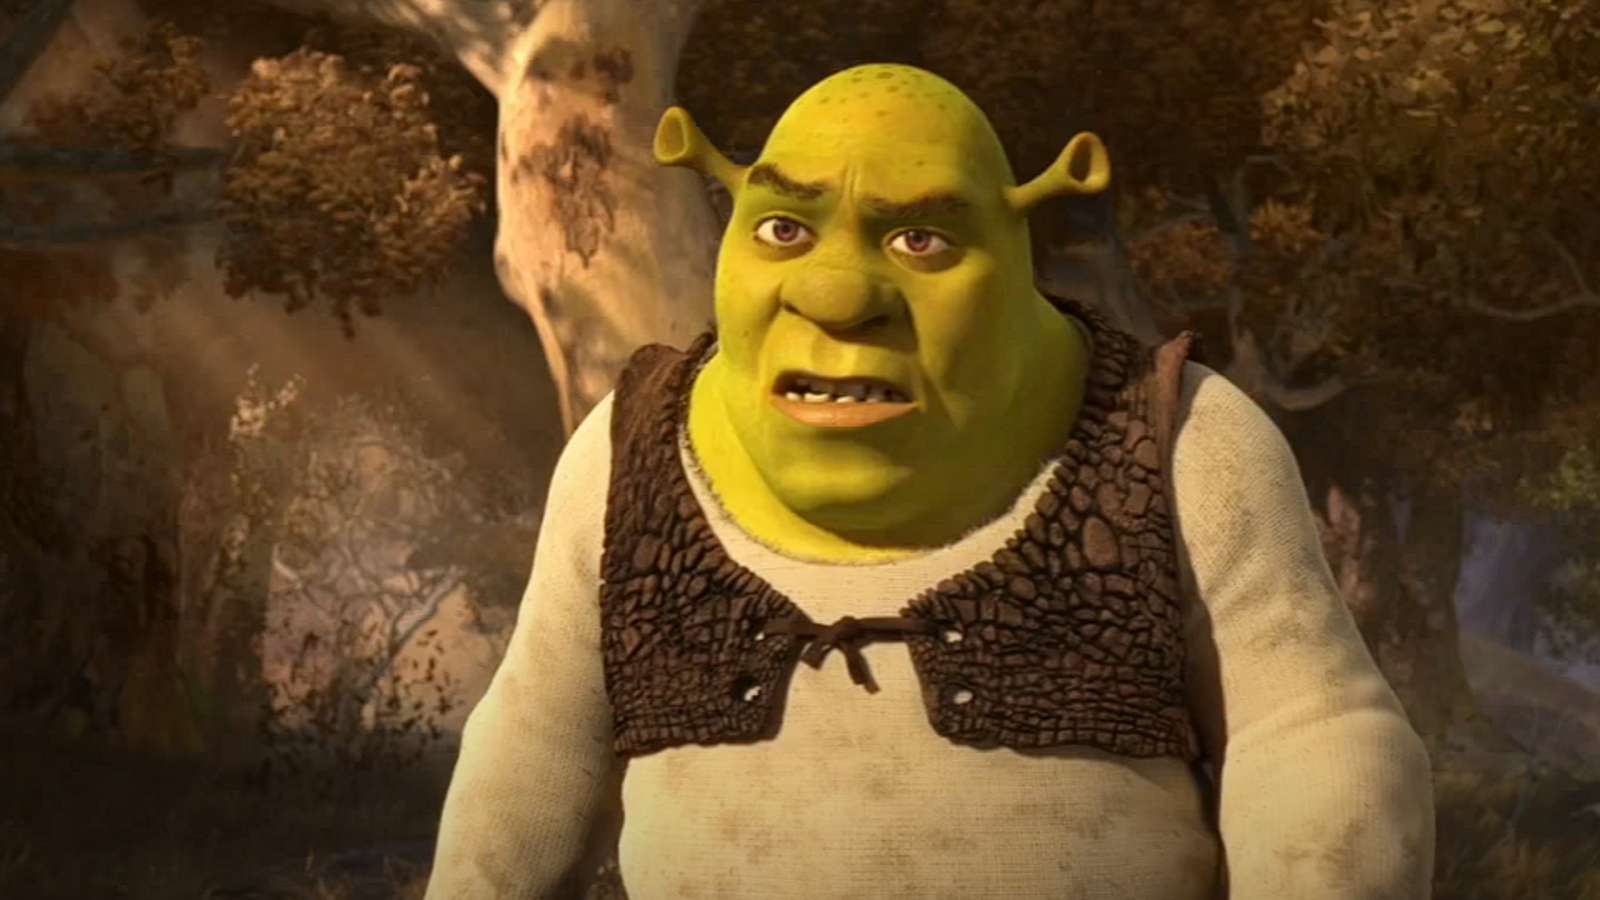 Shrek in the first Shrek film